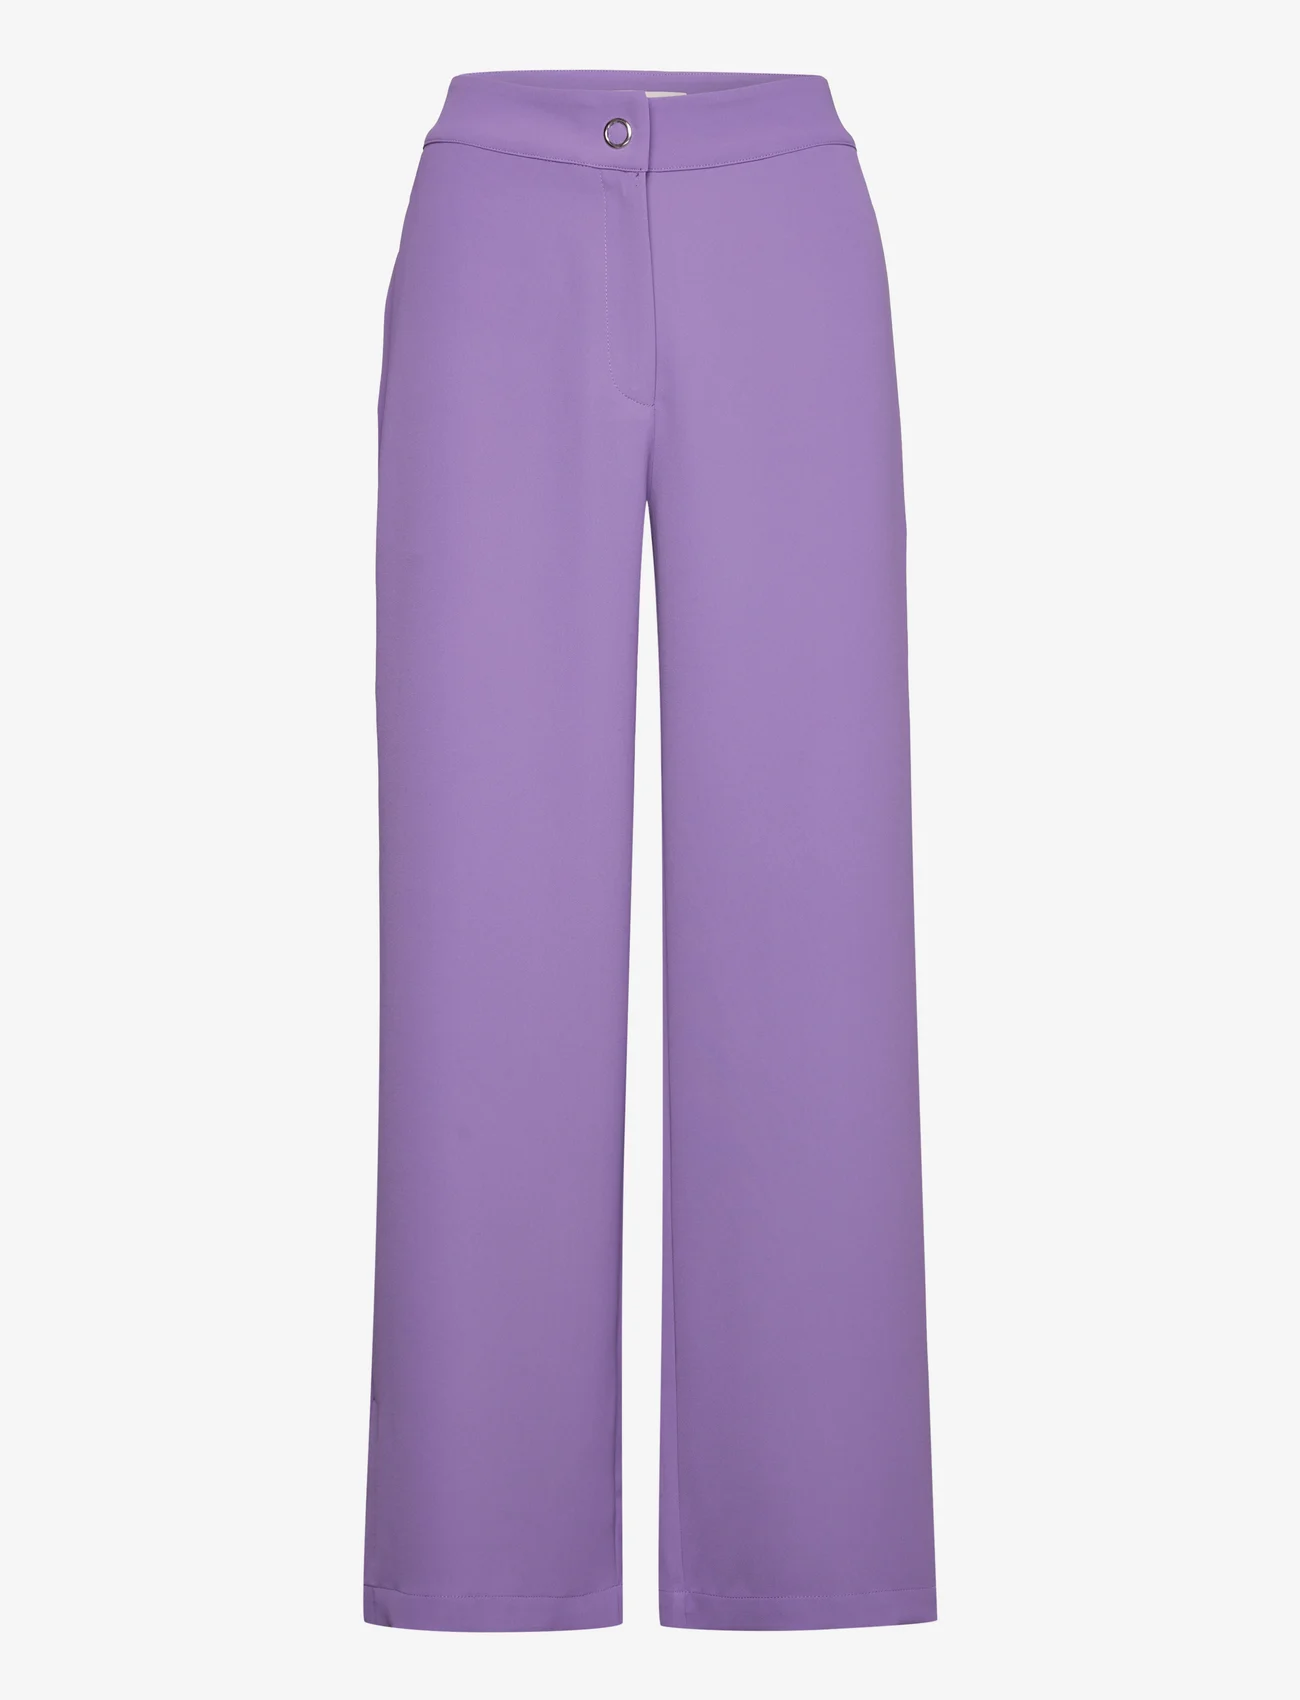 A-View - Vica pant - dressbukser - purple - 0